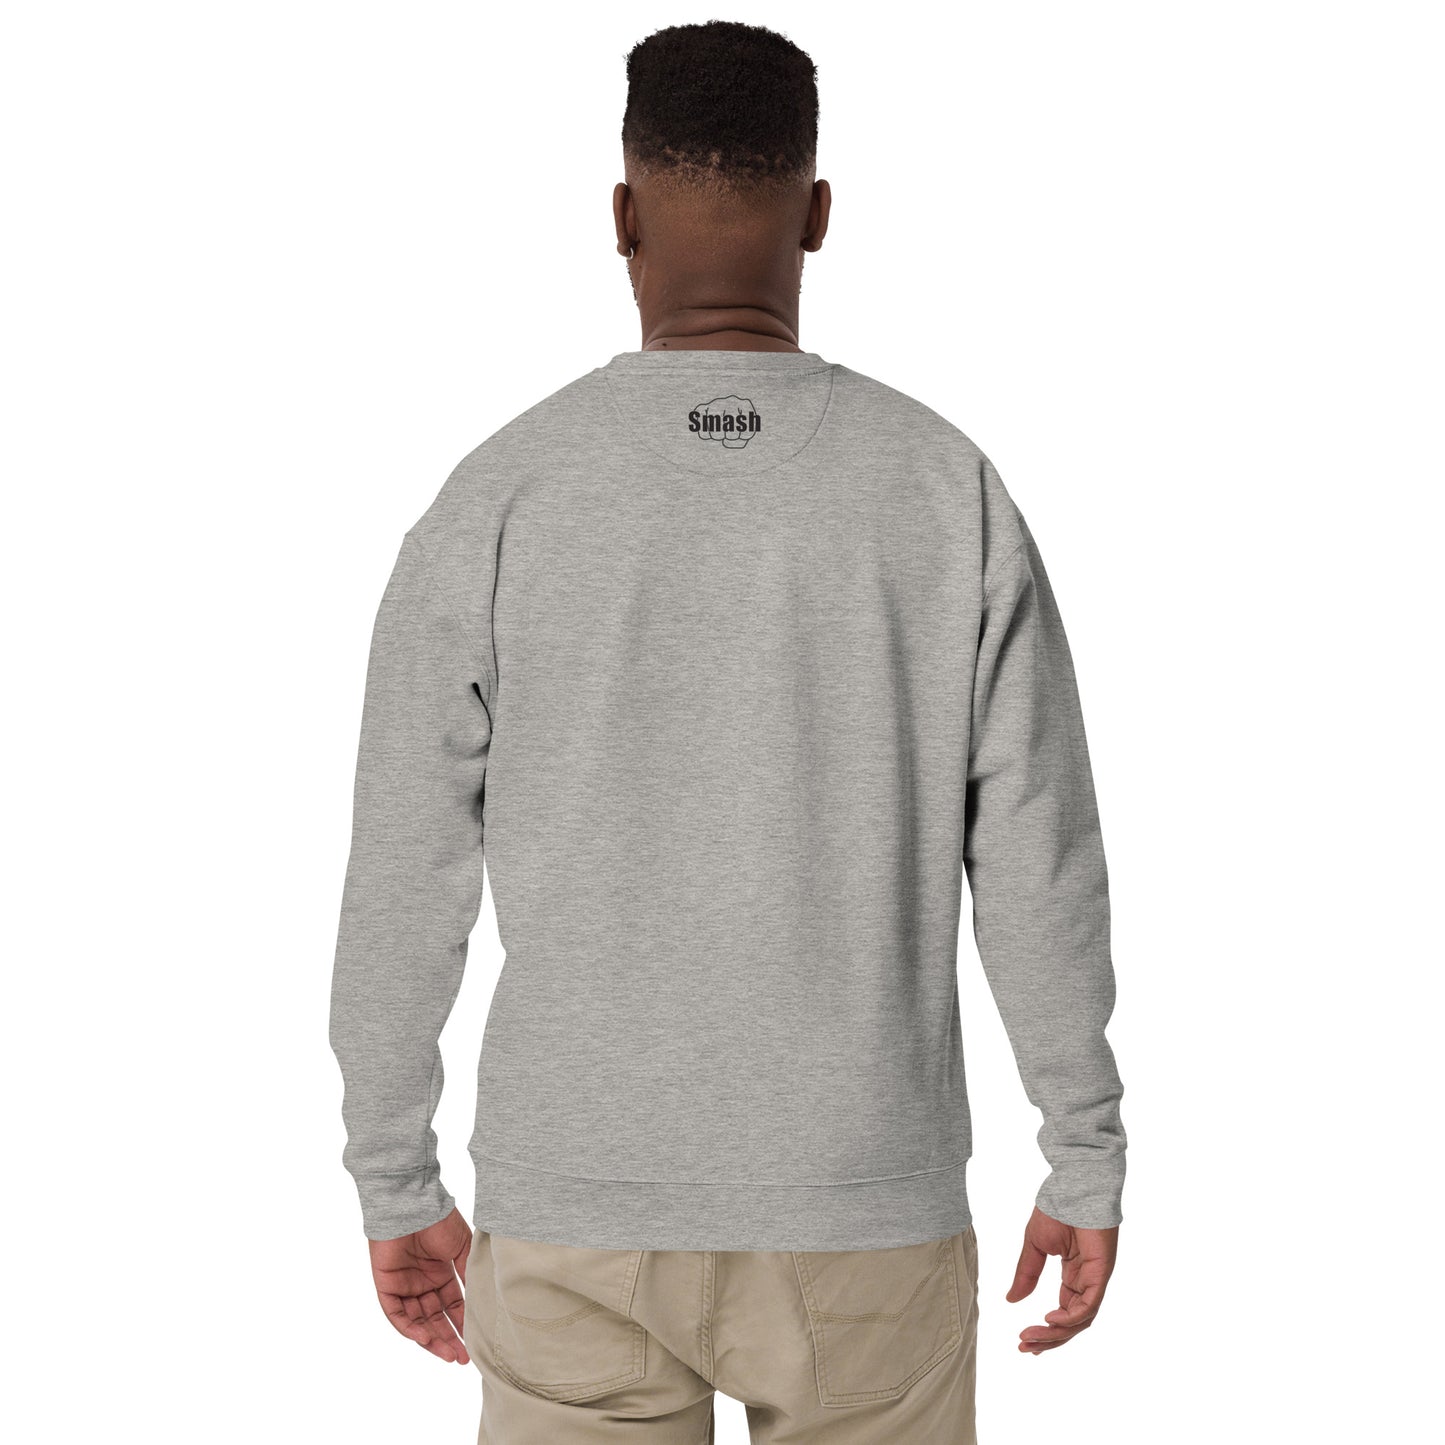 Lion Unisex Premium Sweatshirt